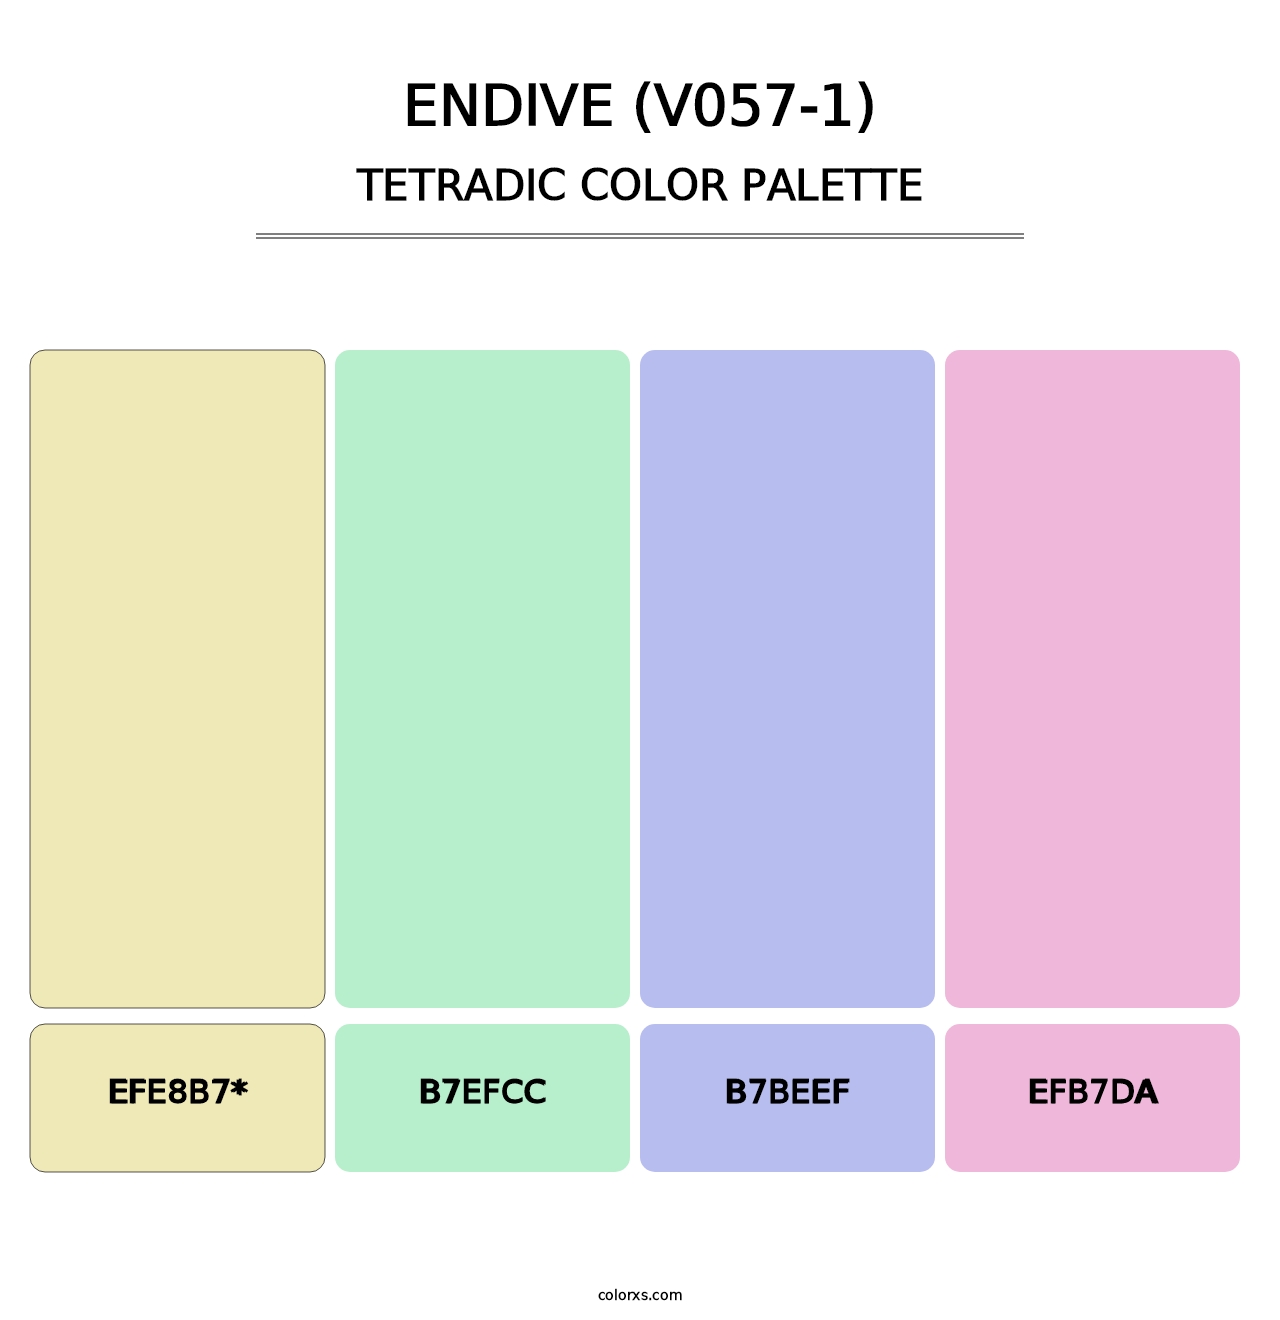 Endive (V057-1) - Tetradic Color Palette